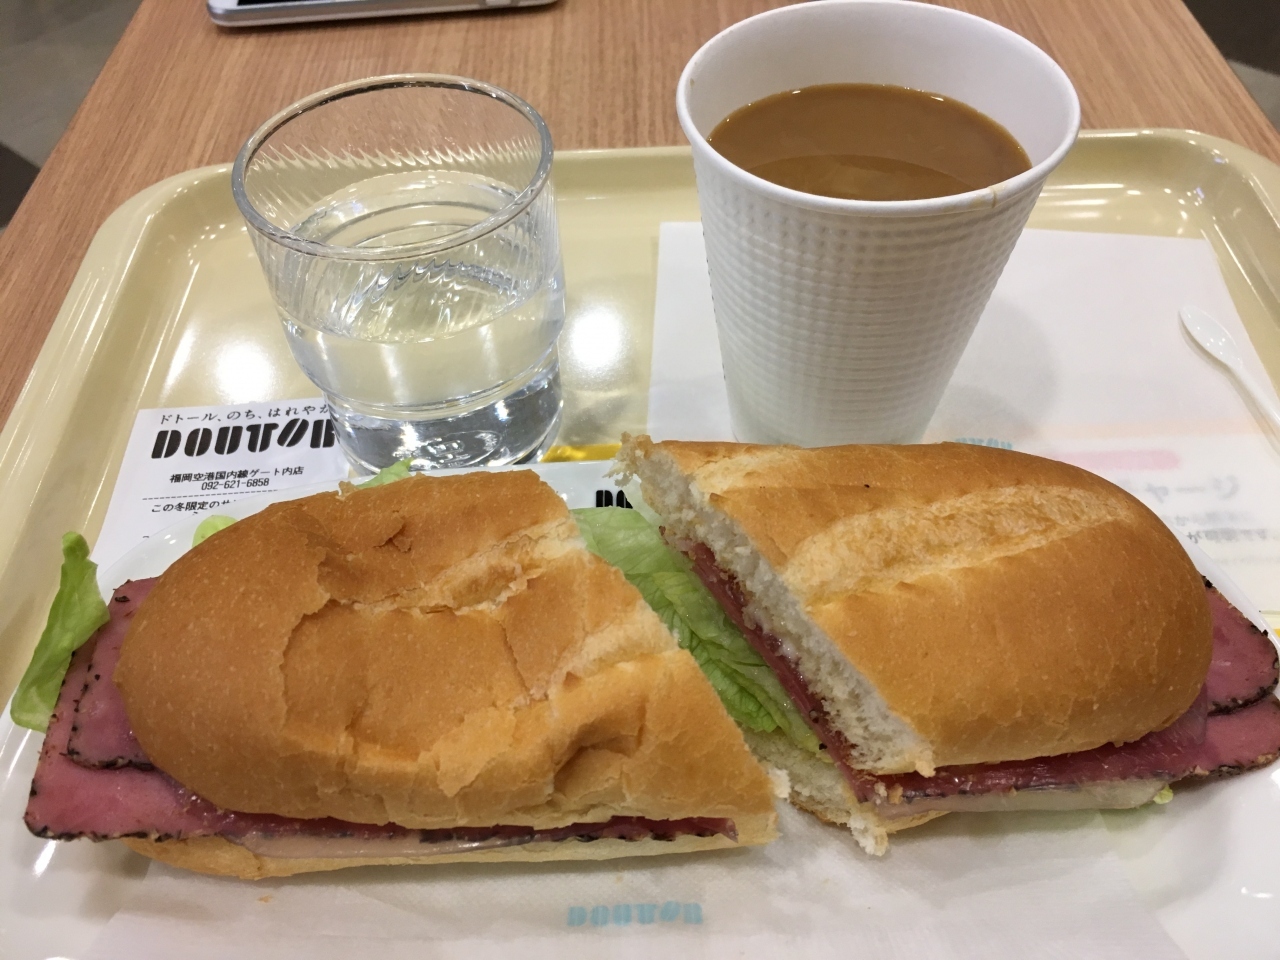 福岡空港内のドトールで朝食を取りました。
